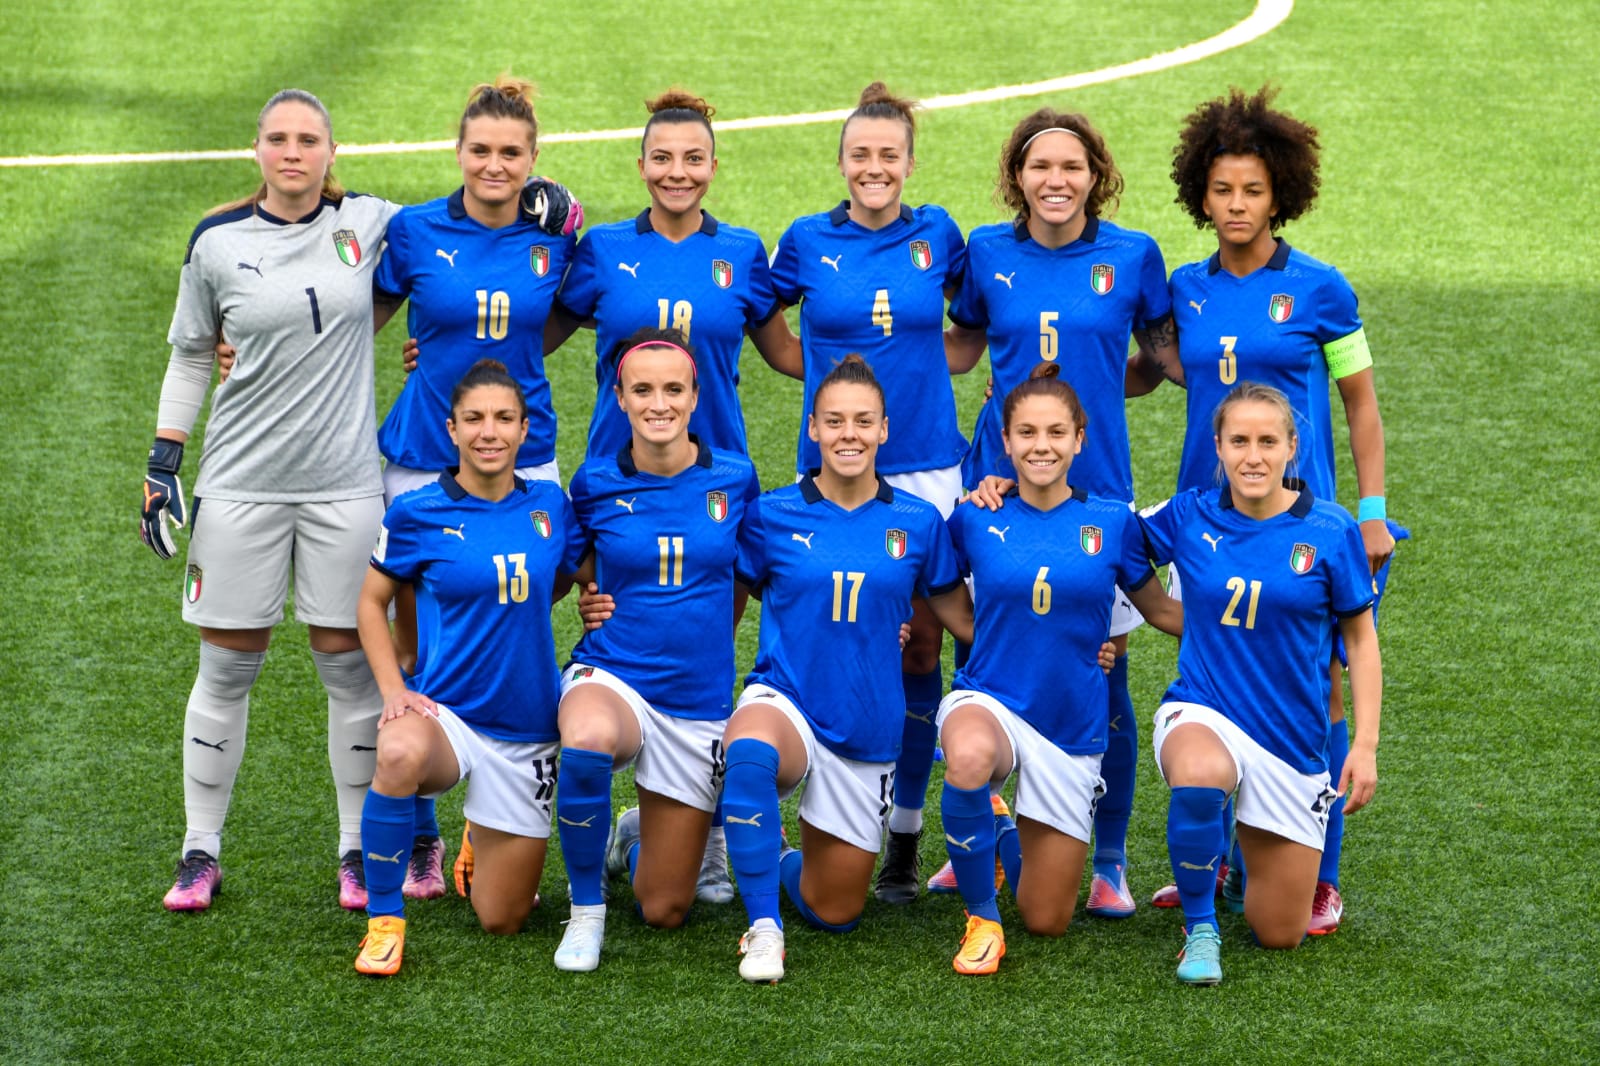 Milan officially acquire Brescia Calcio Femminile, will participate in next  season's Serie A Women's championship